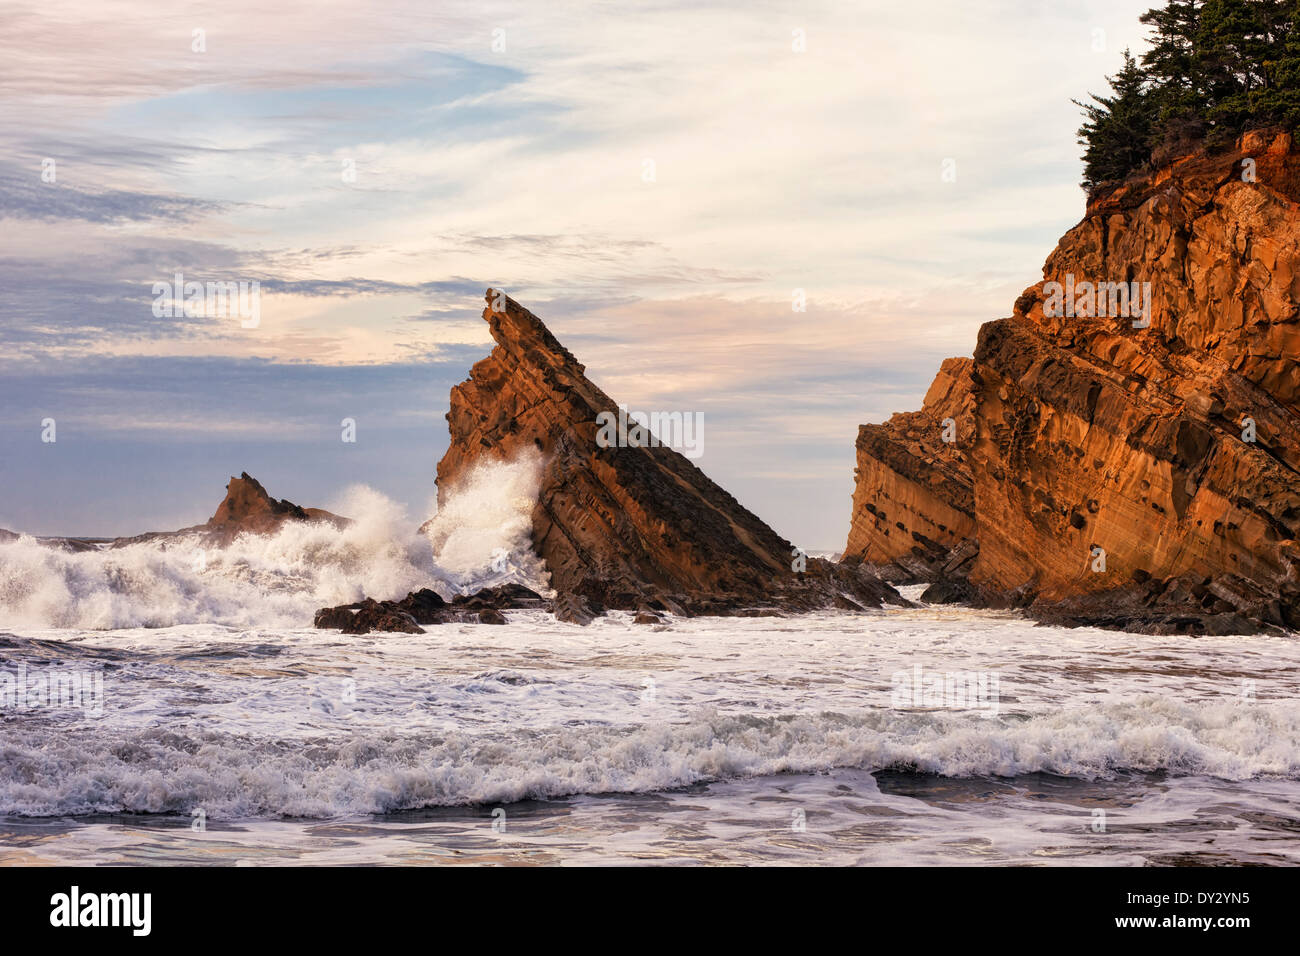 Tarde storm libras los acantilados de arenisca en la costa de Oregon State Park acres de playa de Simpson. Foto de stock